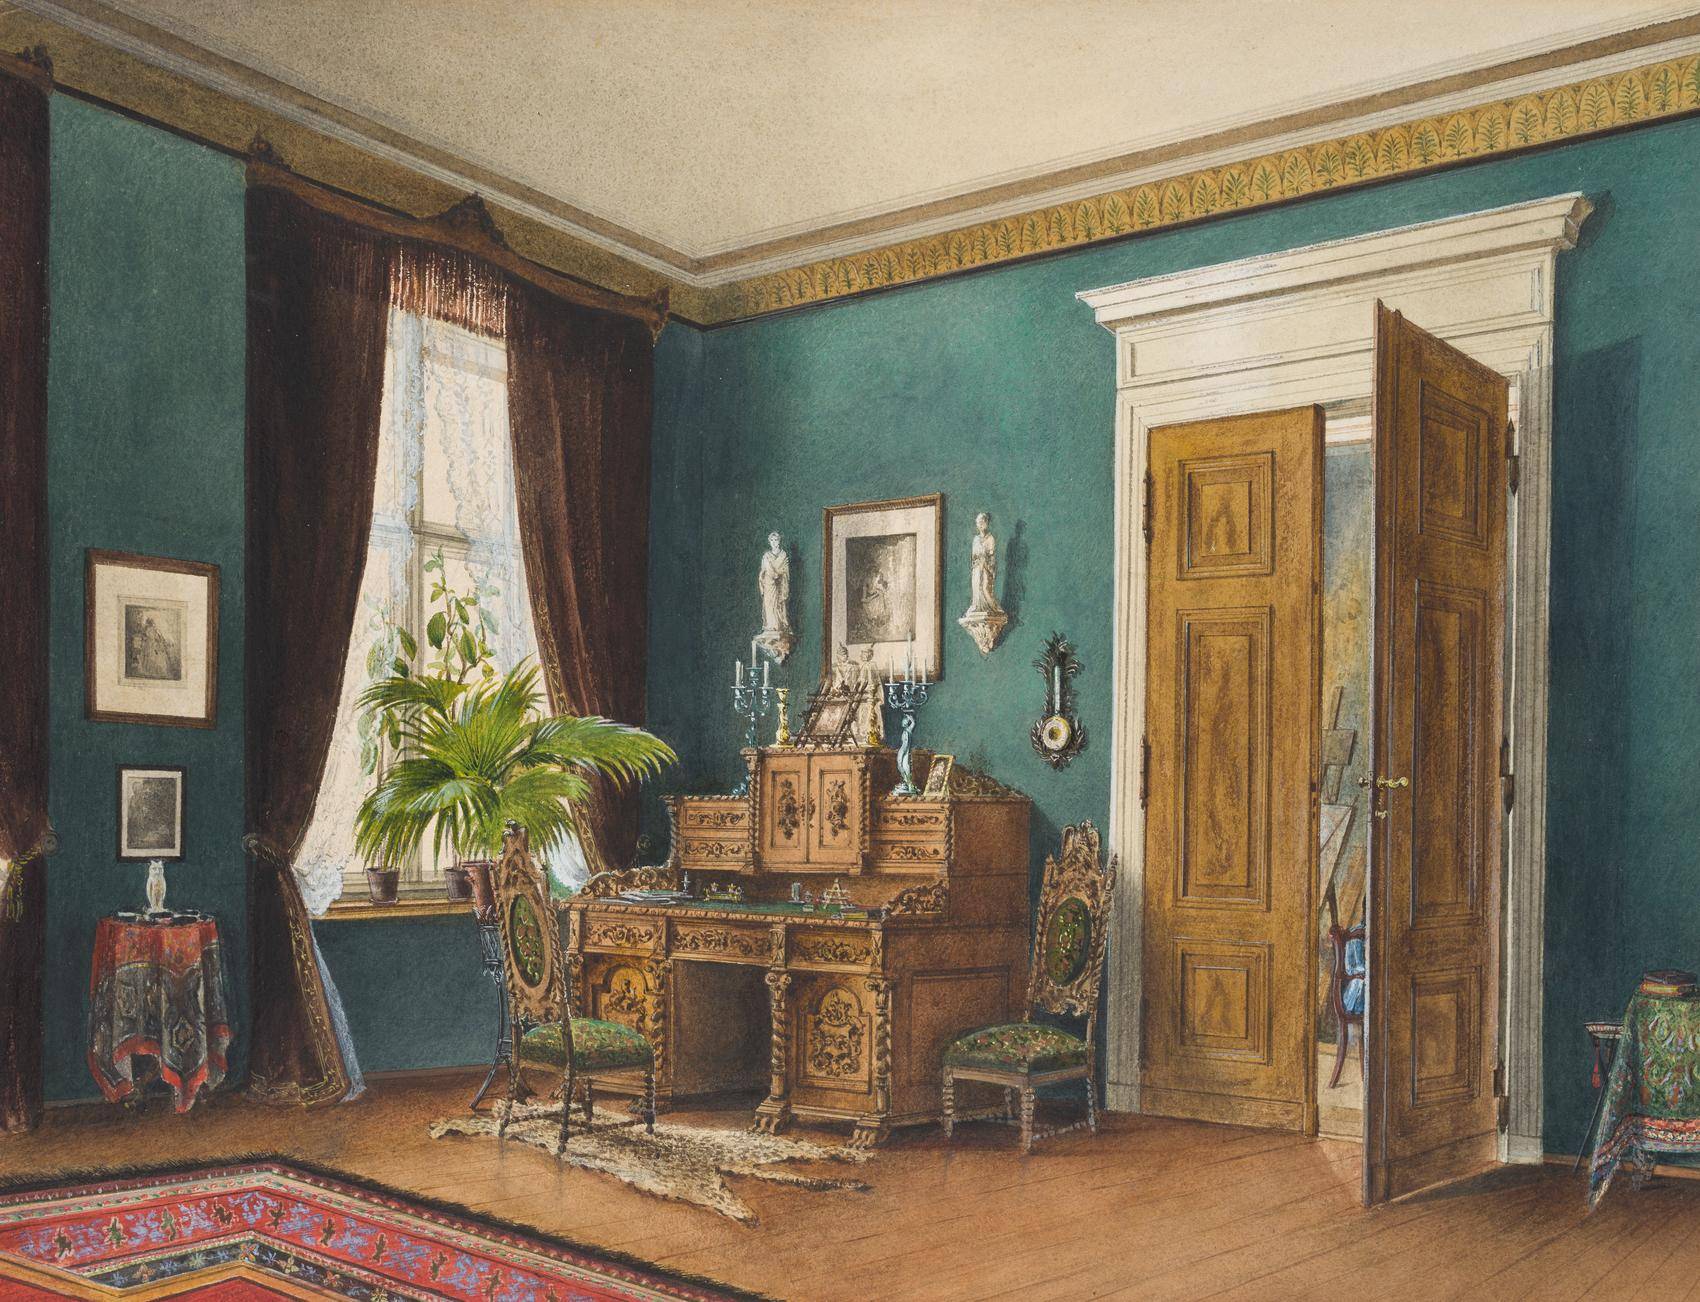 Interieur mit Staffelei, Maleratelier